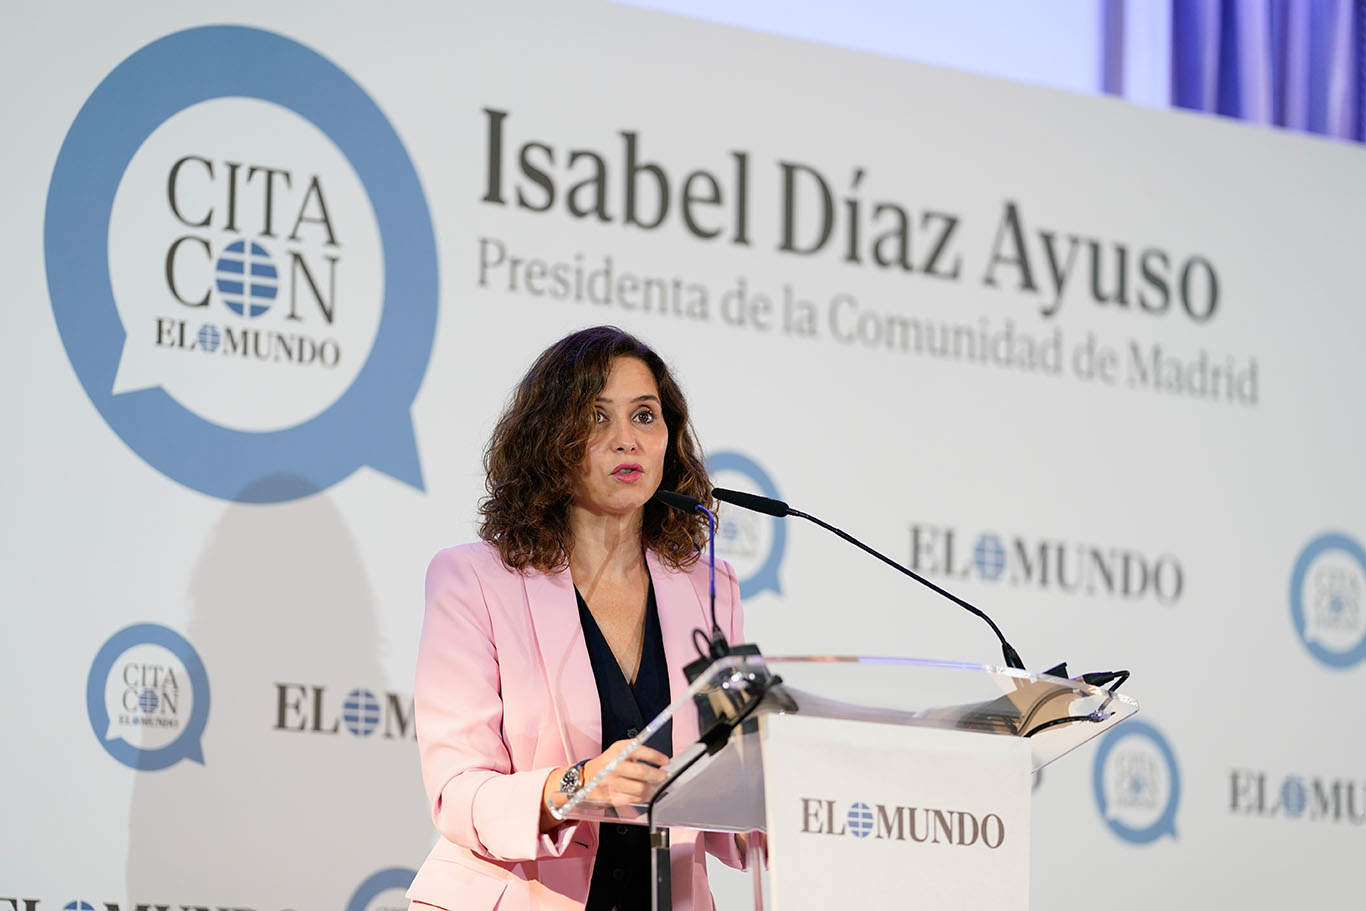 Isabel Díaz Ayuso ficha a Alfonso J. Ussía y Julio Valdeón para redactarle los discursos